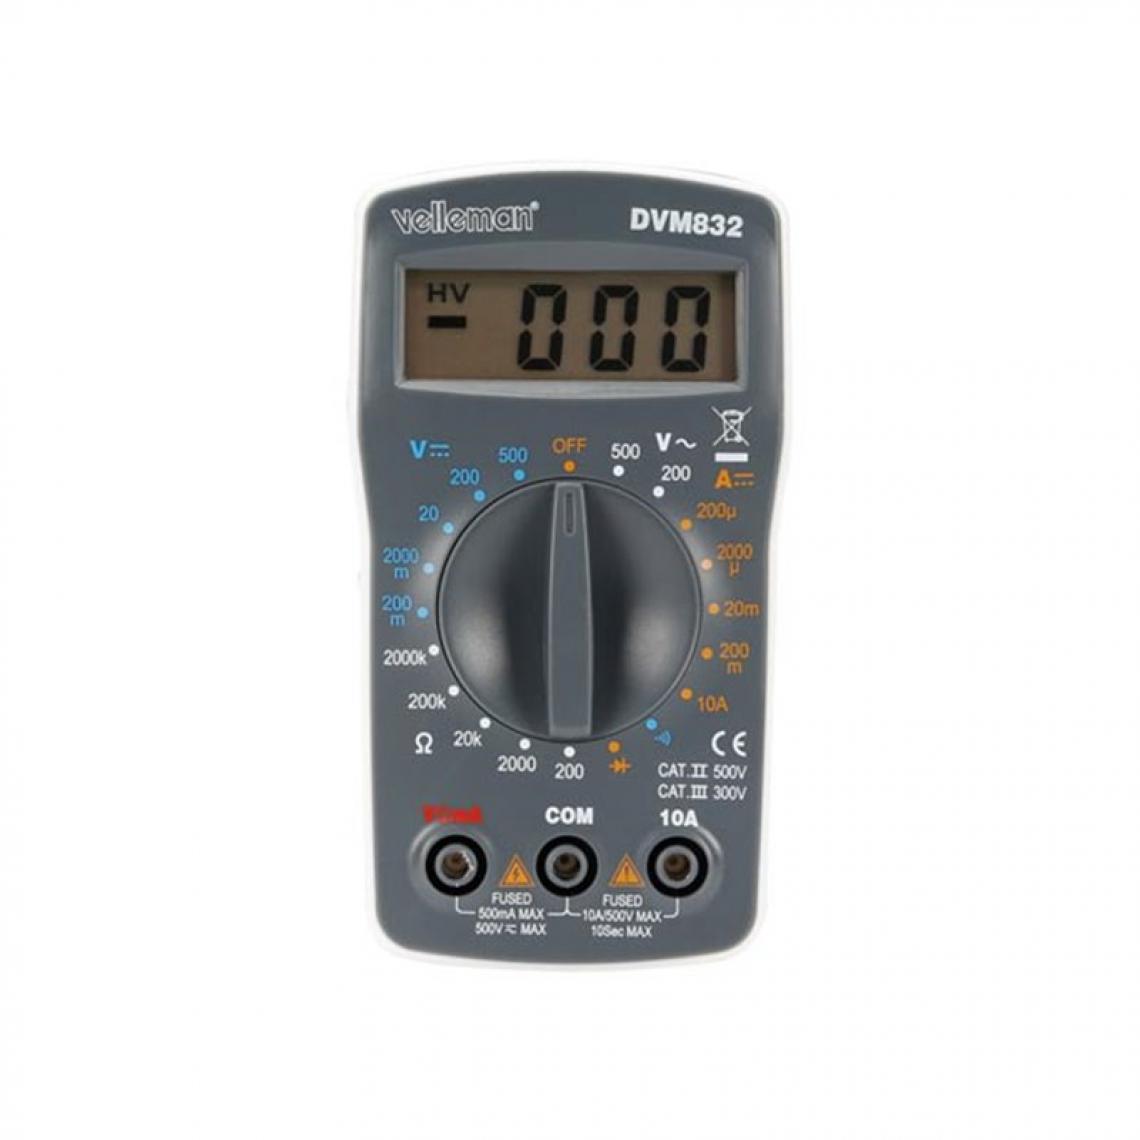 Perel - Multimètre Numérique - Cat Ii 500 V / Cat Iii 300 V - 10 A - 1999 Points - Accessoires chauffe-eau